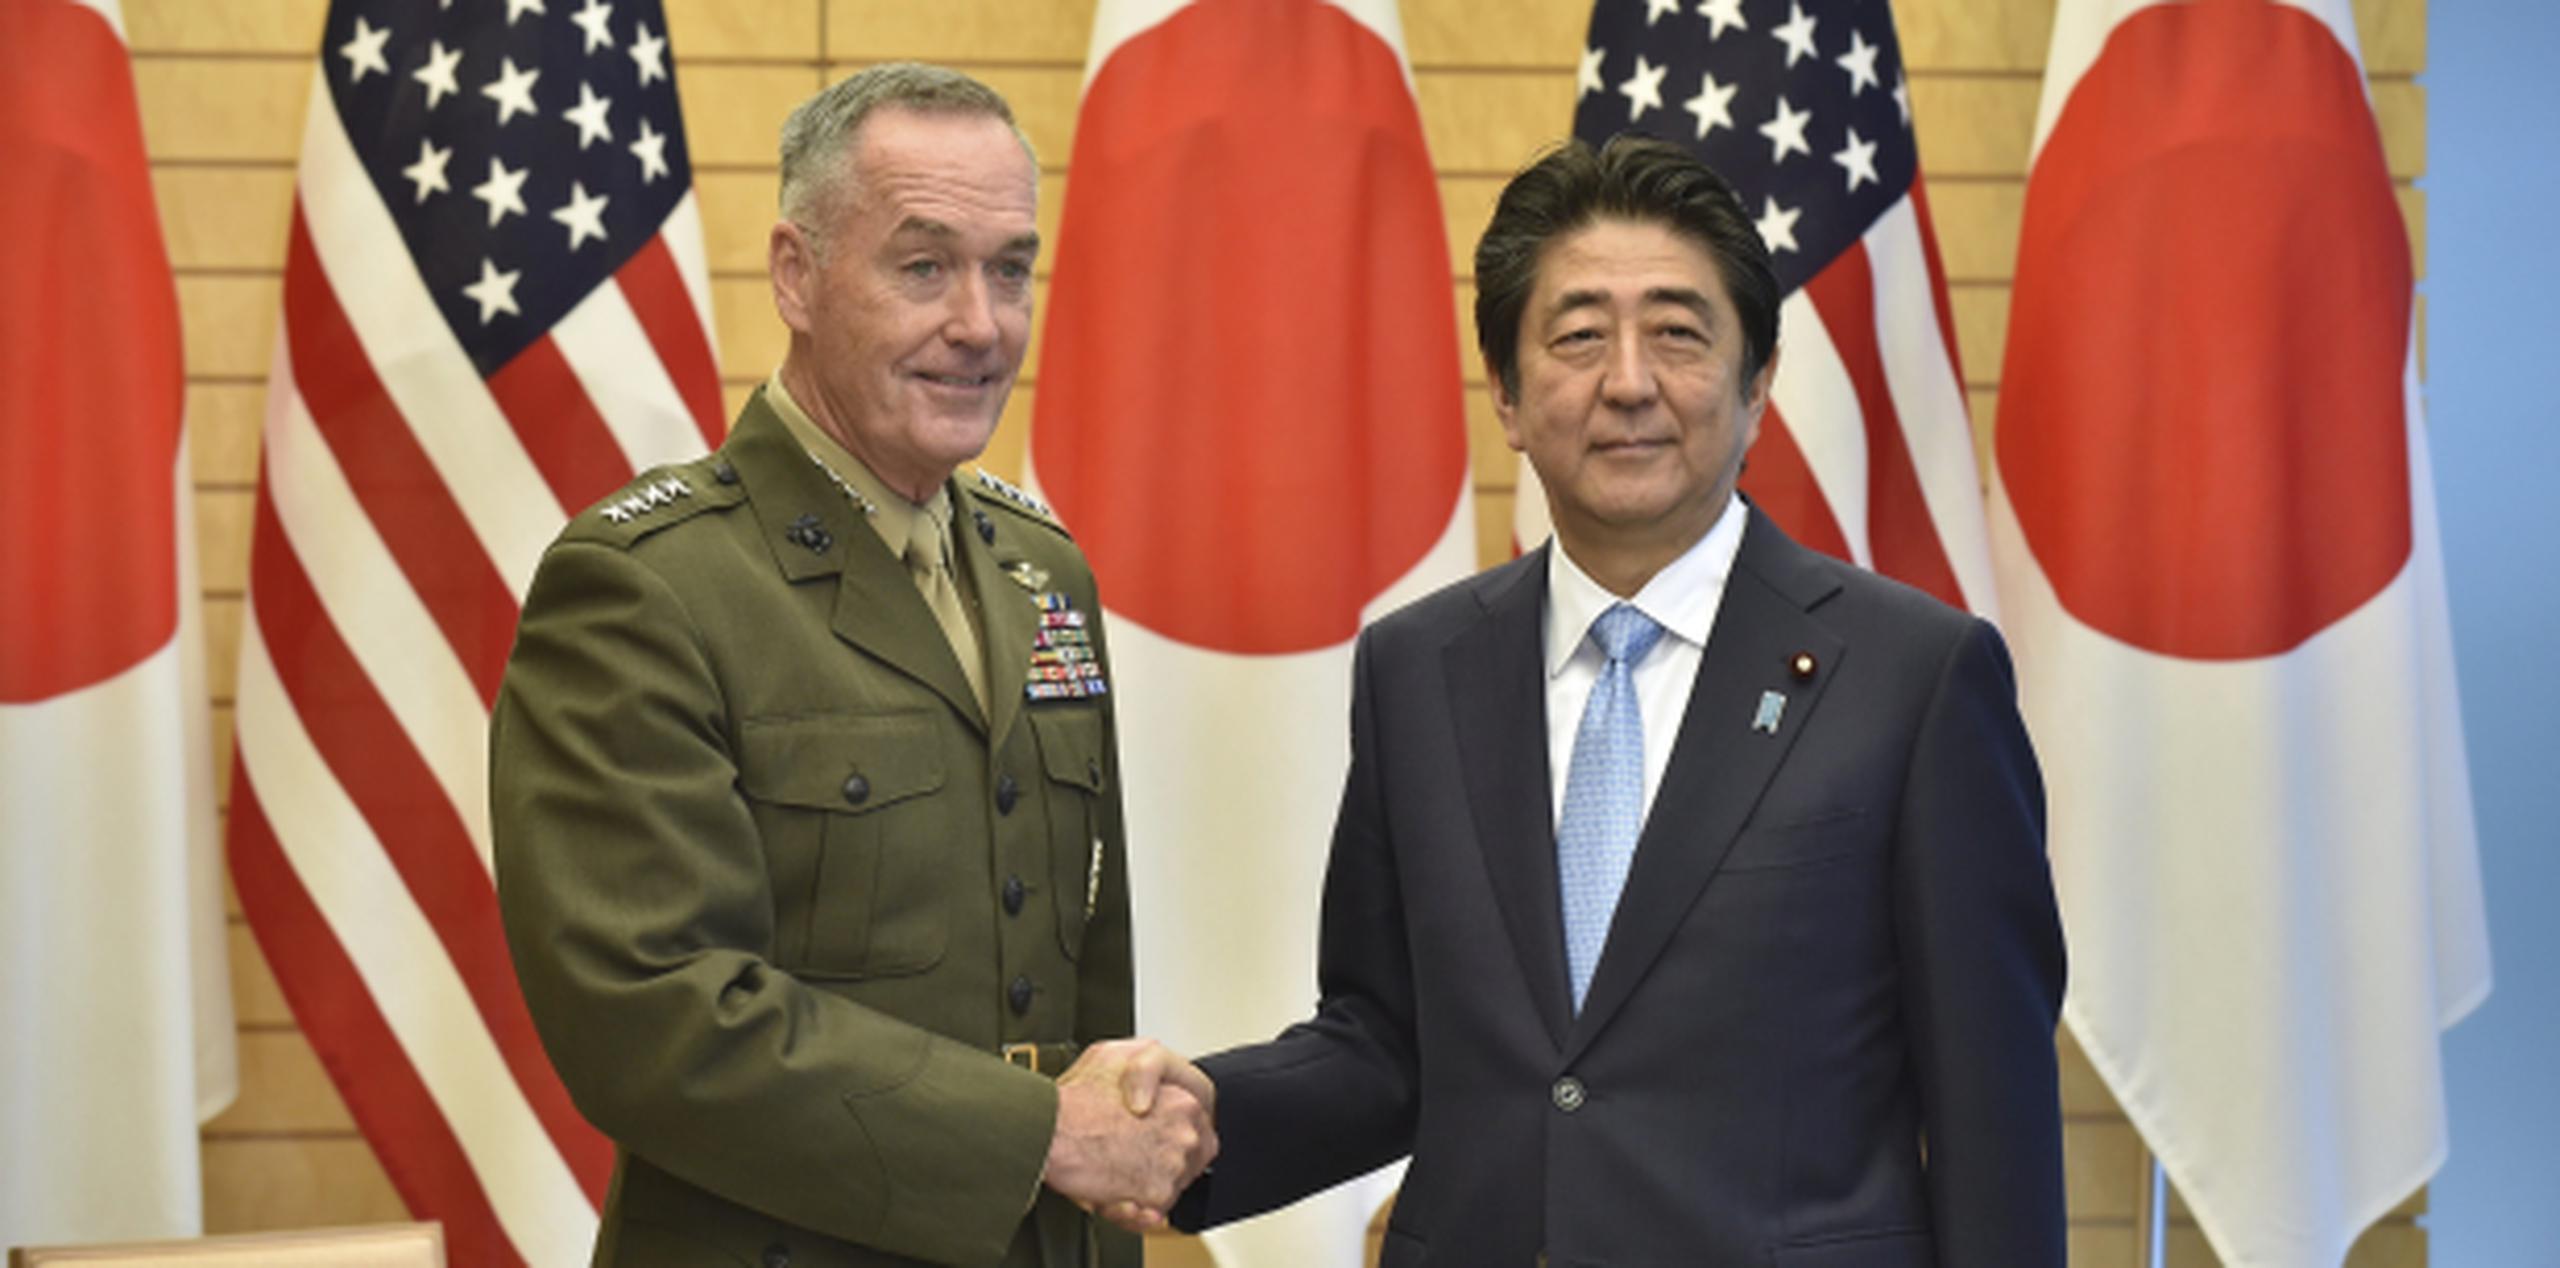 El primer ministro japonés, Shinzo Abe, recibió hoy al jefe del Estado Mayor Conjunto de Estados Unidos, el general Joseph Dunford, en la residencia oficial de Abe en Tokio. (EFE / Kazuhiro Nogi / Pool)